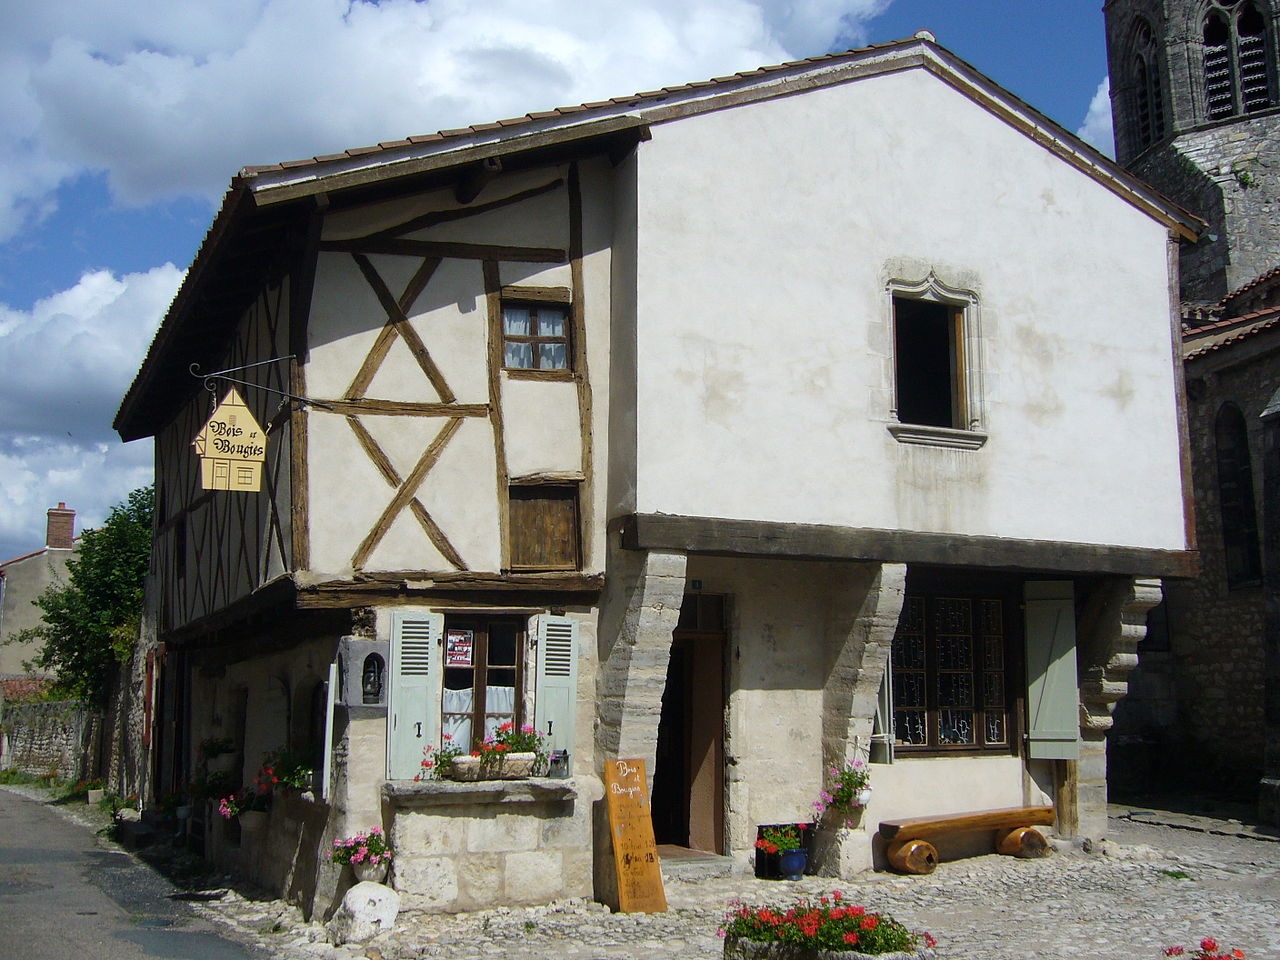 851-charroux_plus_beaux_villages_de_france_allier.jpg